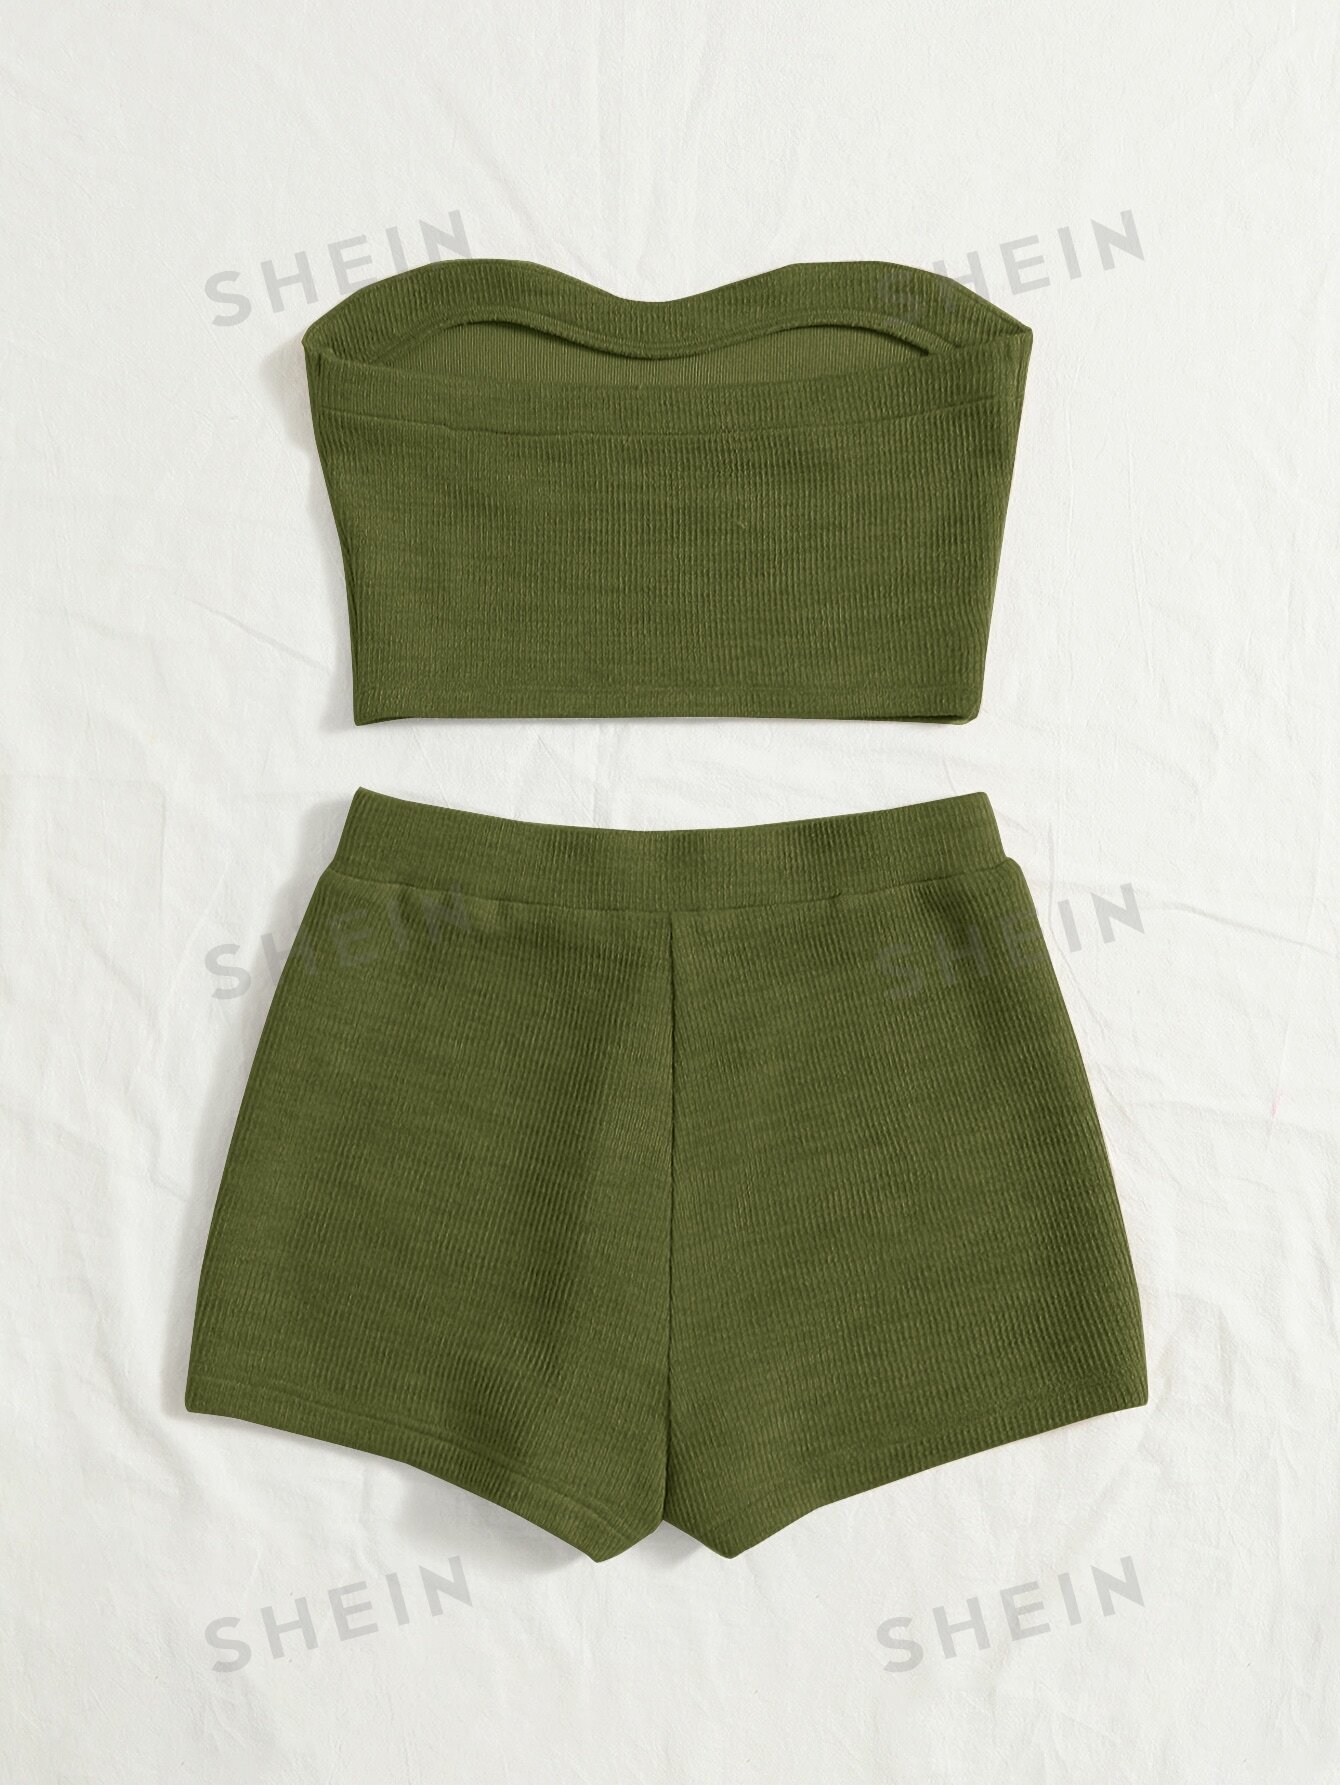 цена SHEIN WYWH WYWH Женский вязаный топ в рубчик для отдыха и шорты цвета хаки в байкерском стиле, армейский зеленый